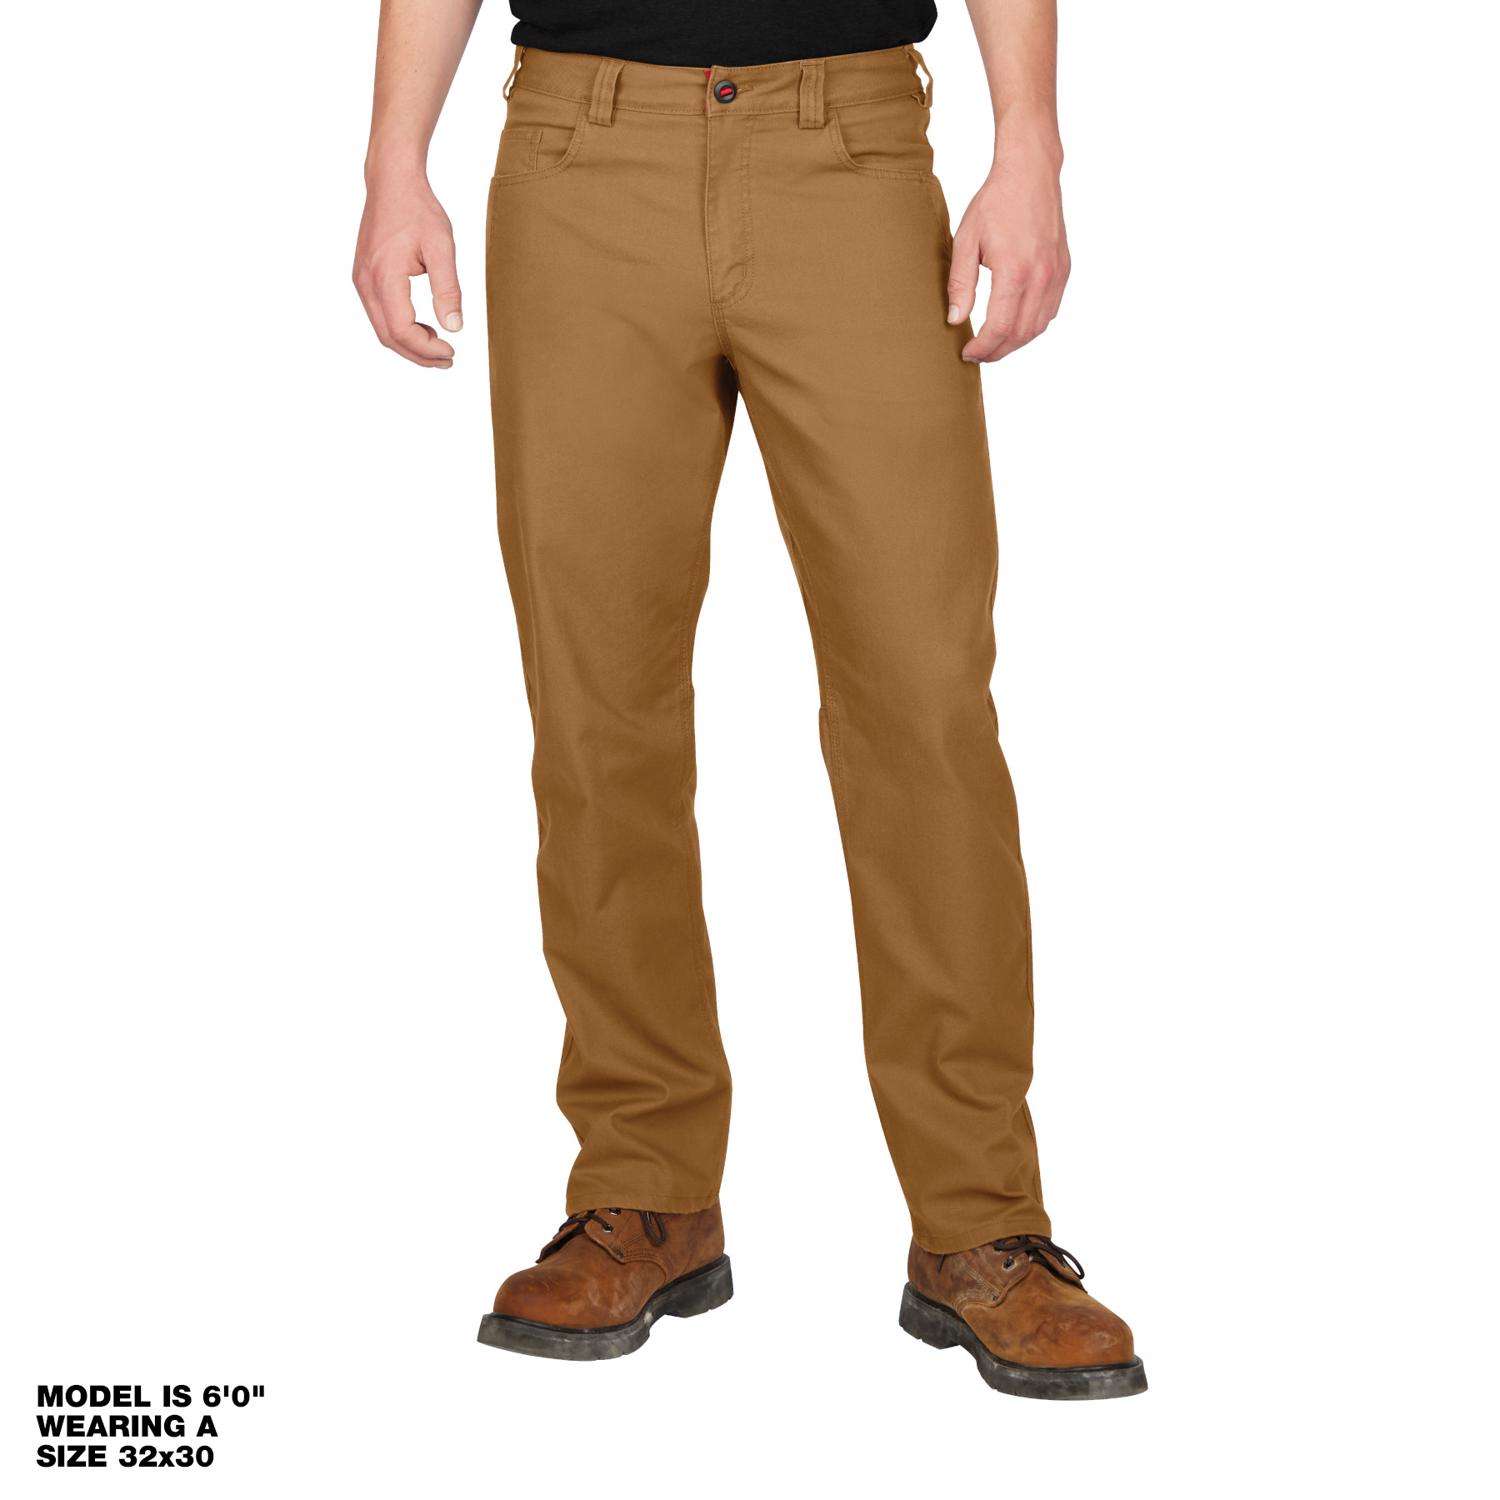 Milwaukee Men's Cotton/Polyester Heavy Duty Flex Work Pants Desert Khaki  34x30 6 pocket 1 pk